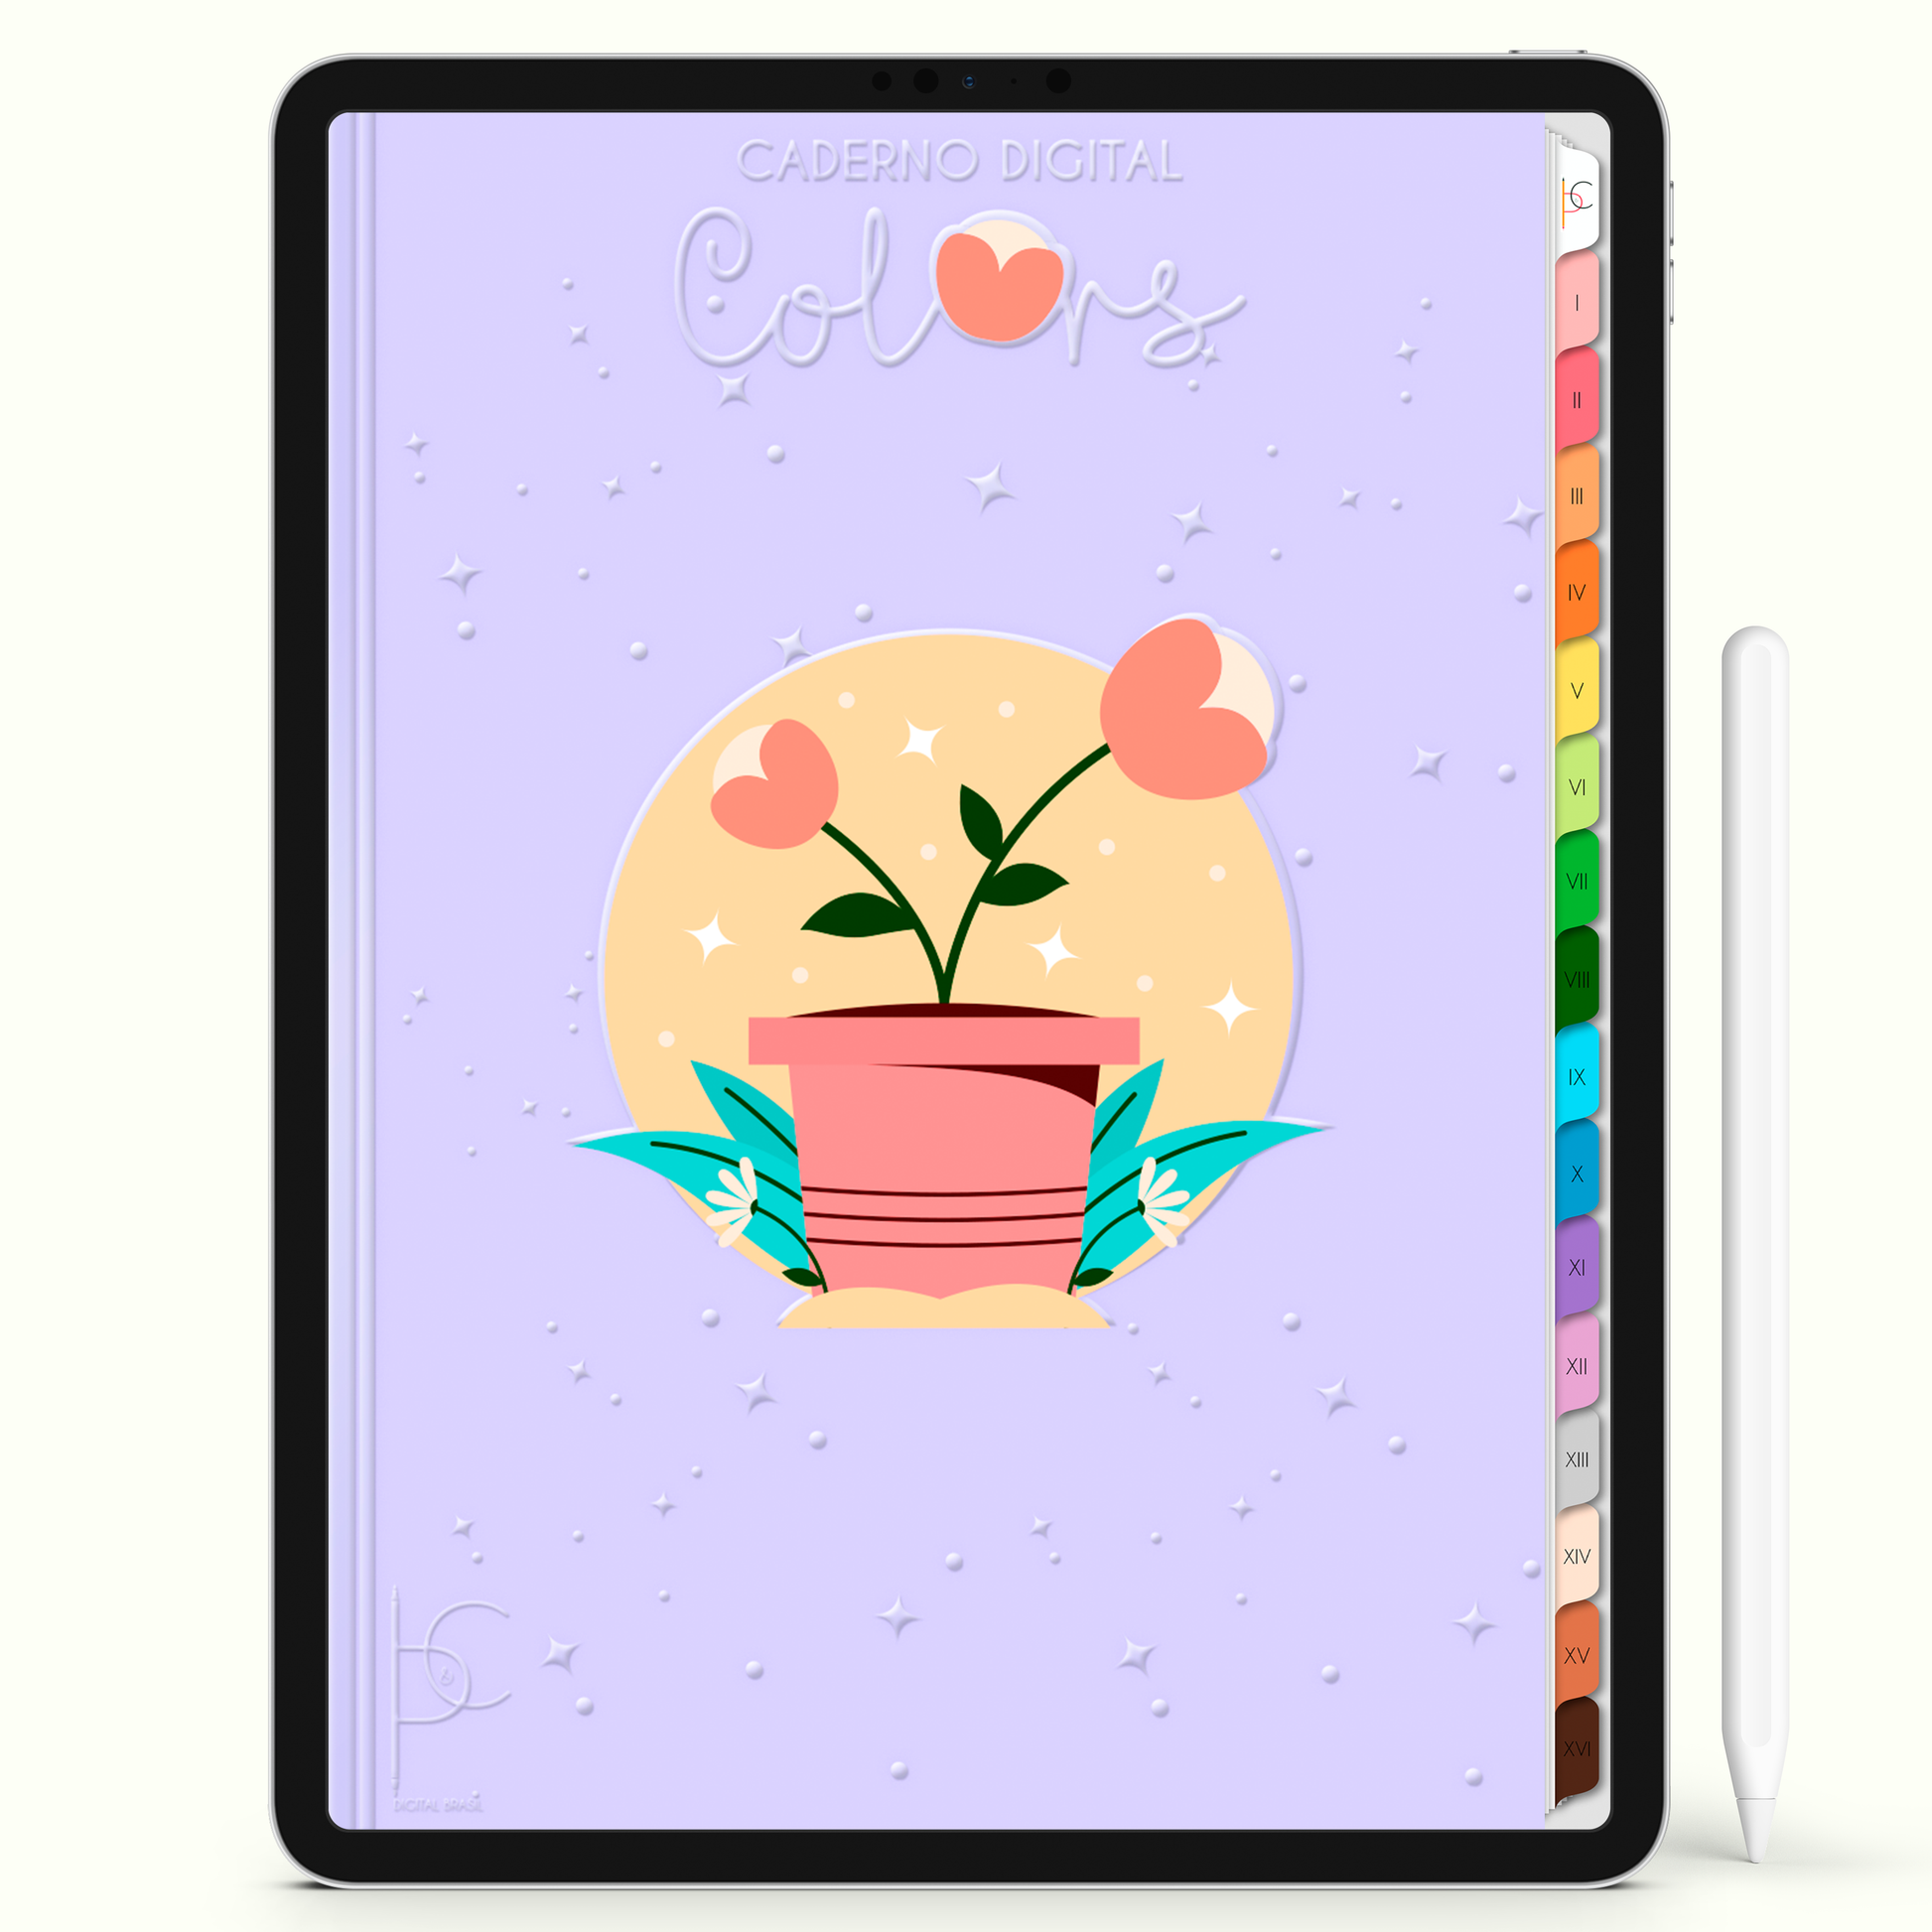 Caderno Digital Colors Guia de Estudos 16 Matérias • Para iPad e Tablet Android • Download instantâneo • Sustentável